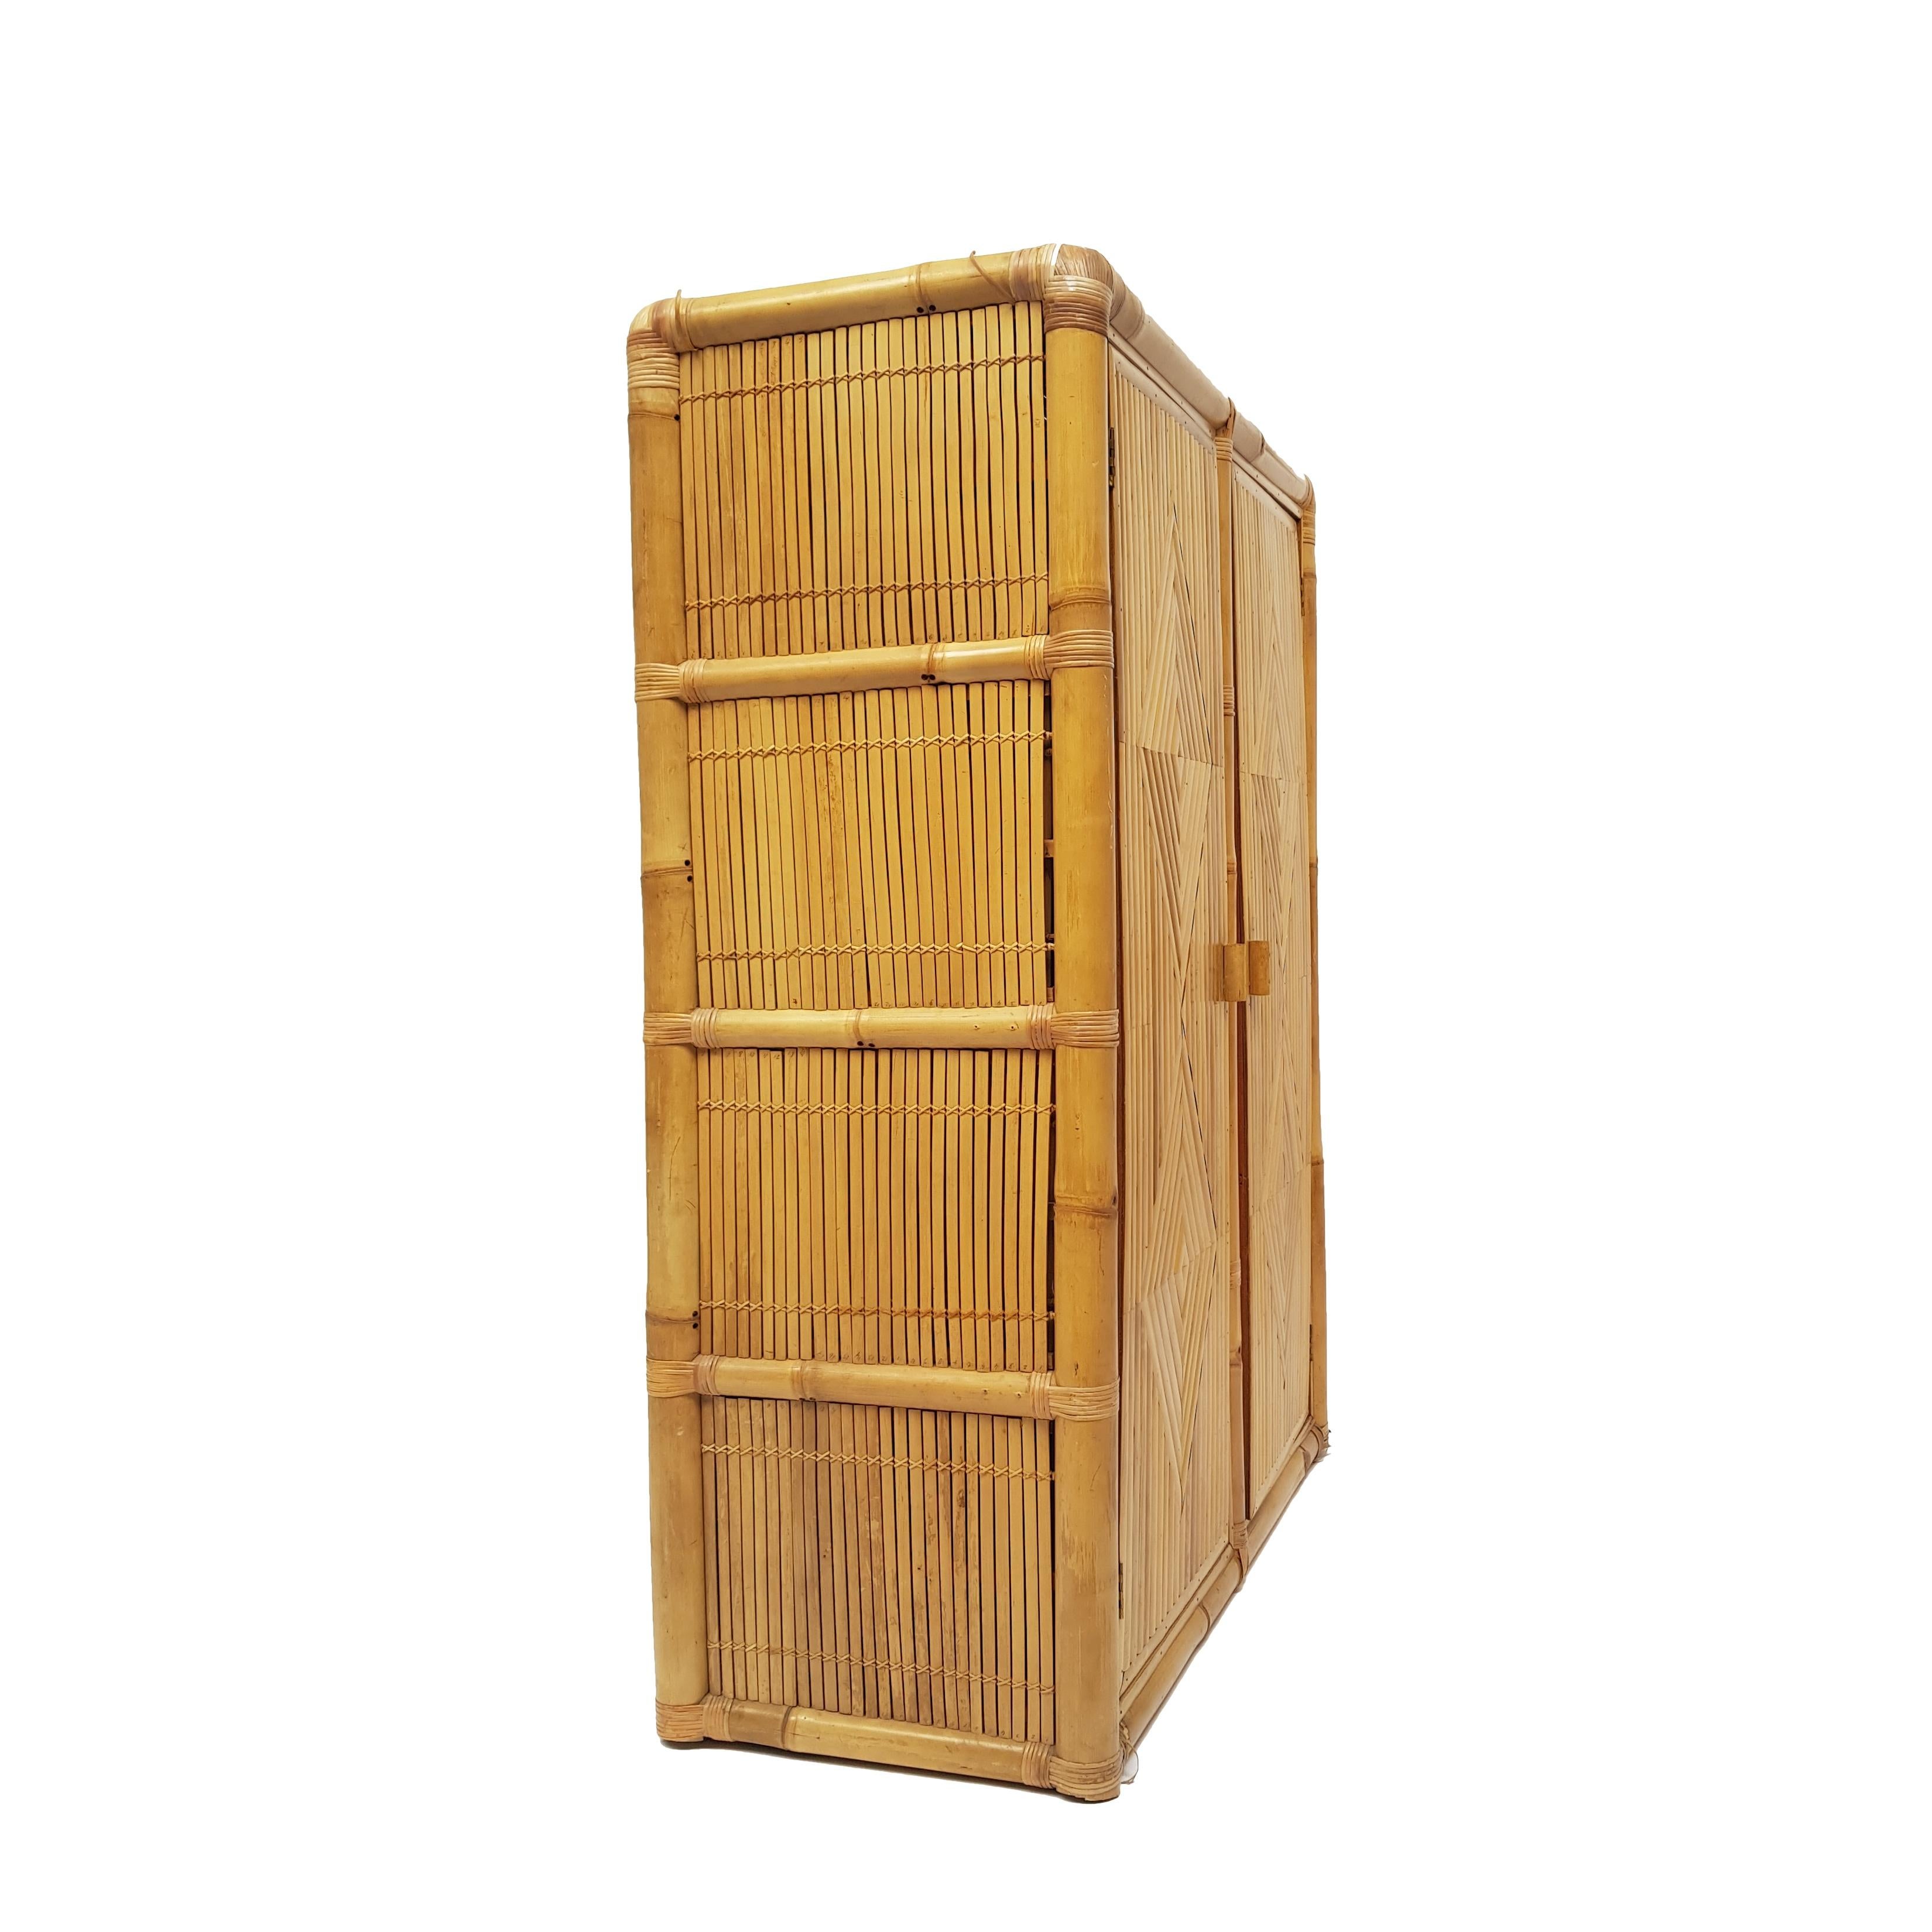 Elegant contemporary bamboo wardrobe.